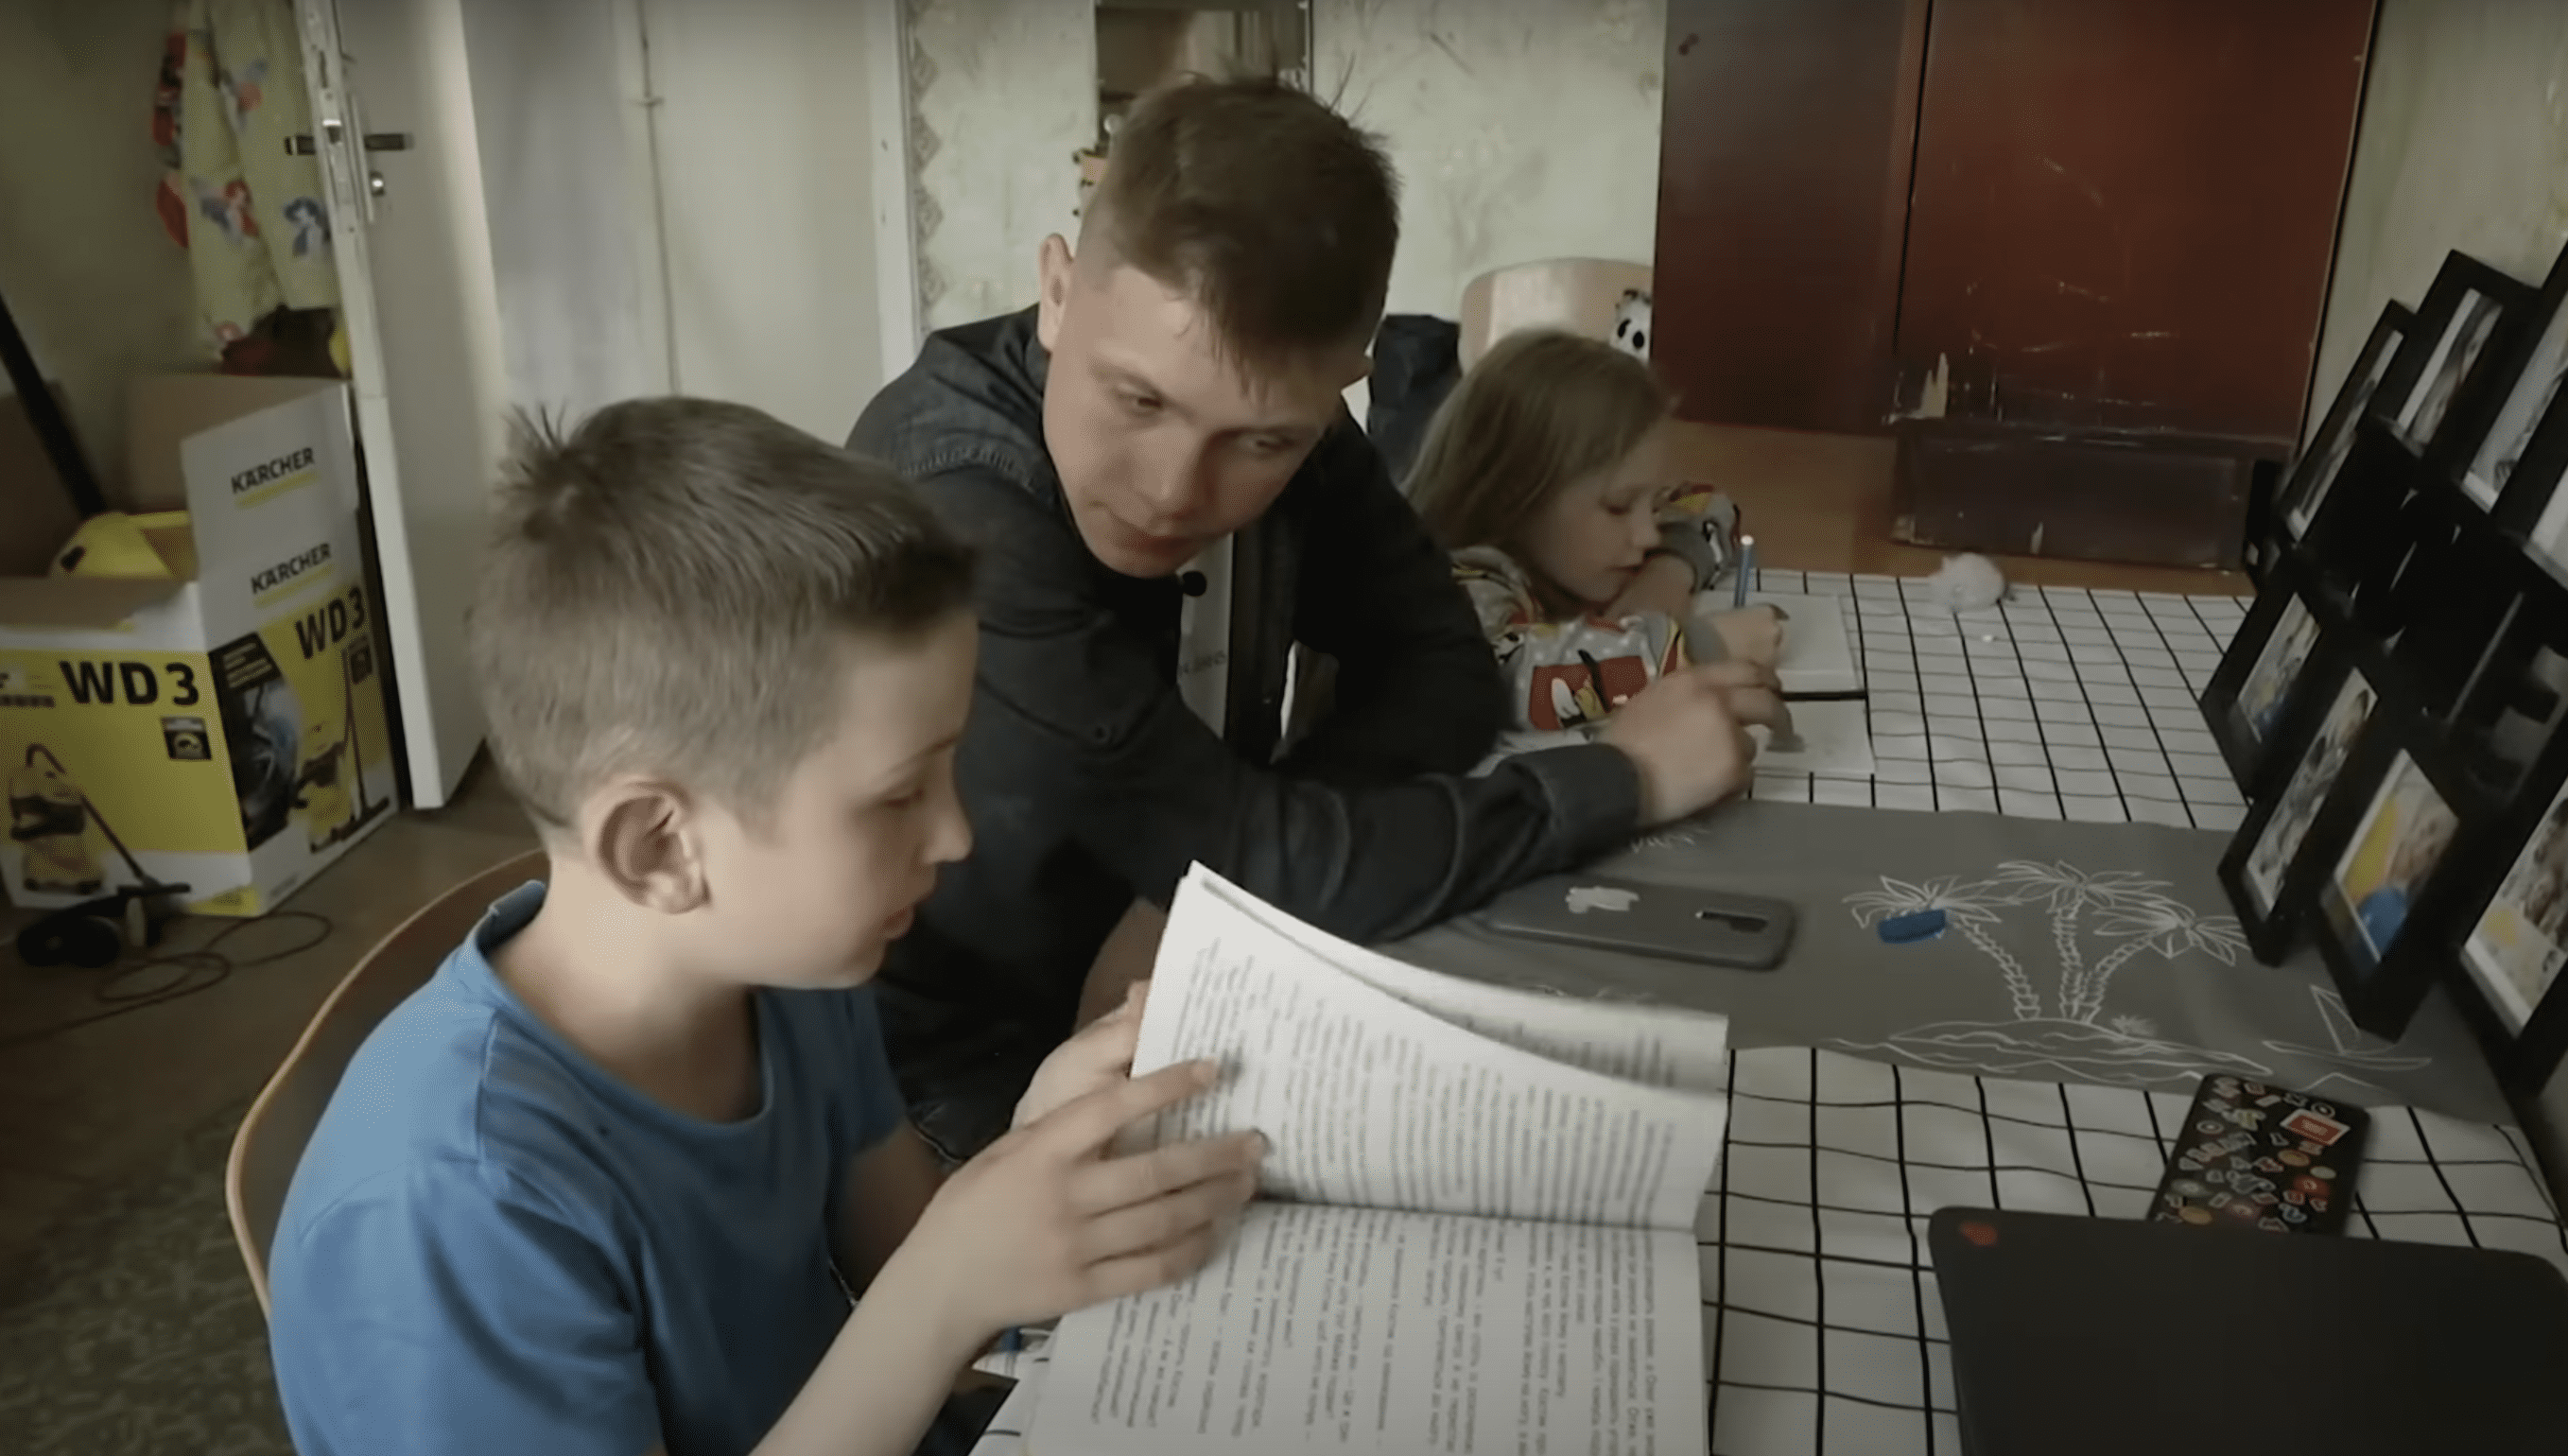 Vyacheslav "Slava" Yalov hilft seinen Geschwistern bei den Schularbeiten. | Quelle: YouTube.com/WCCO – CBS Minnesota